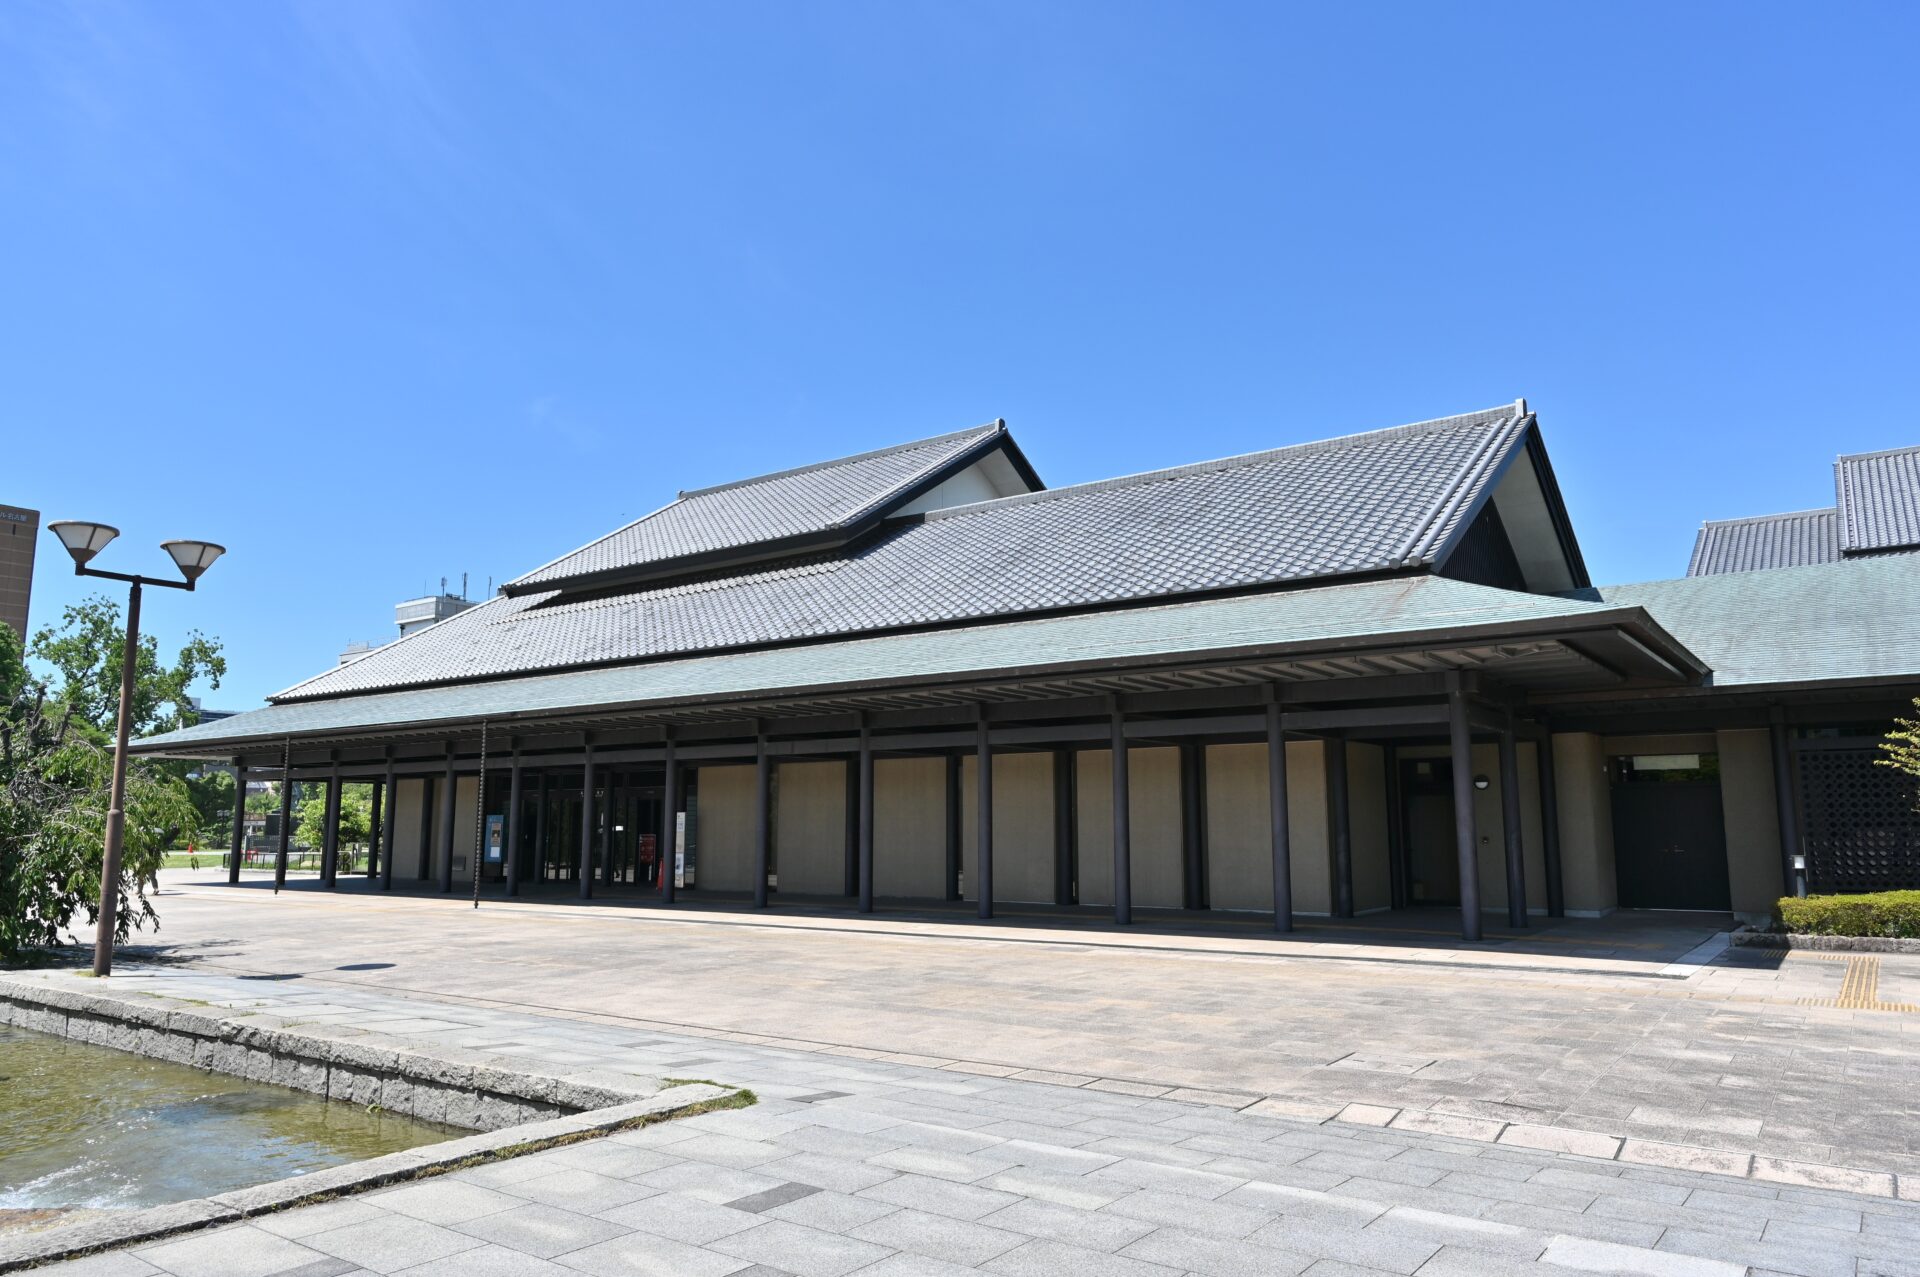 能や狂言などの日本の伝統芸能を楽しめる名古屋能楽堂